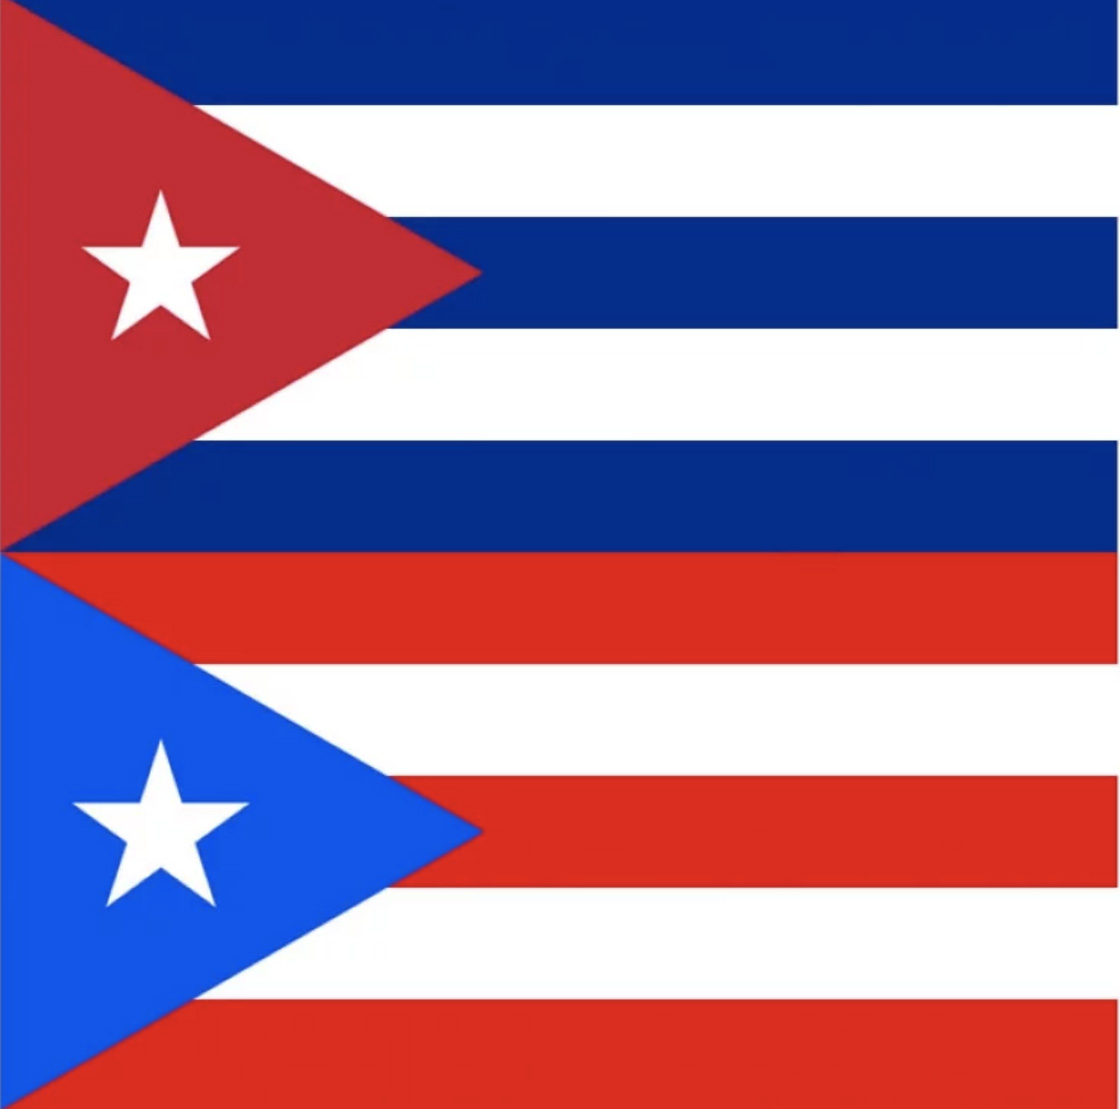 Bangladesh revolución Faceta EpicFail Uber quiere felicitar a Puerto Rico y termina utilizando la bandera  de Cuba | Sopitas.com